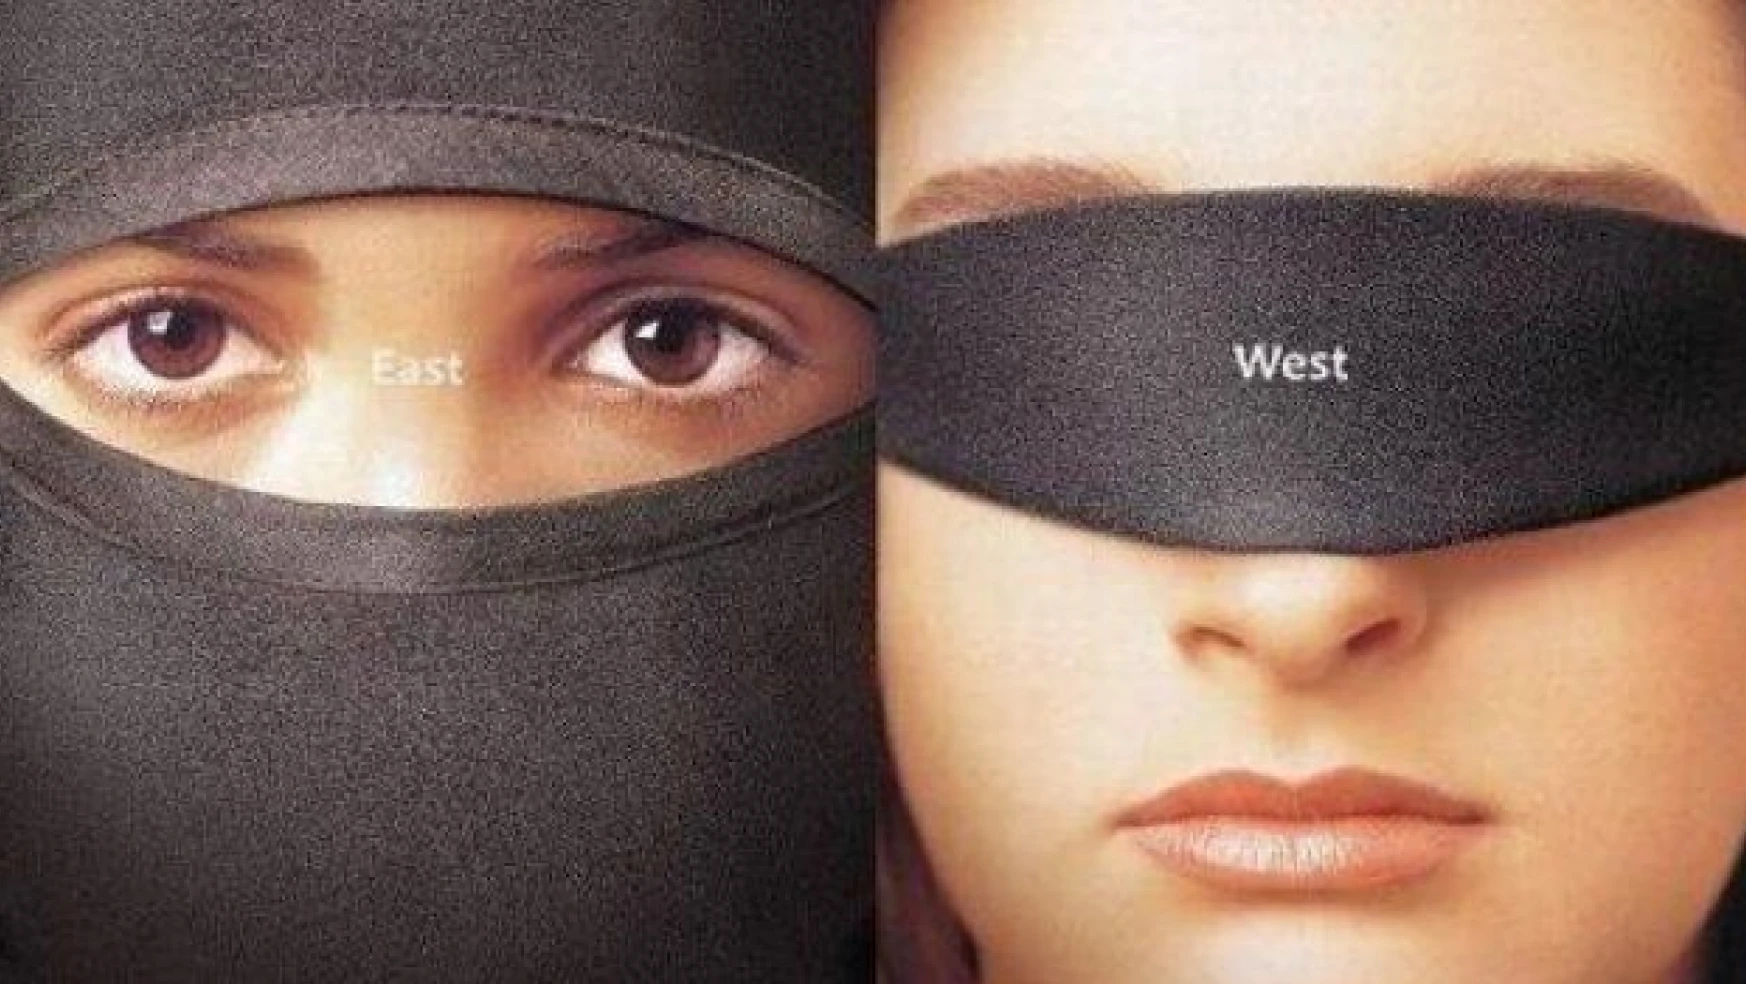 Batı ve Doğu arasındaki farkın nedeni laiklik mi? Batı göründüğü kadar laik mi?